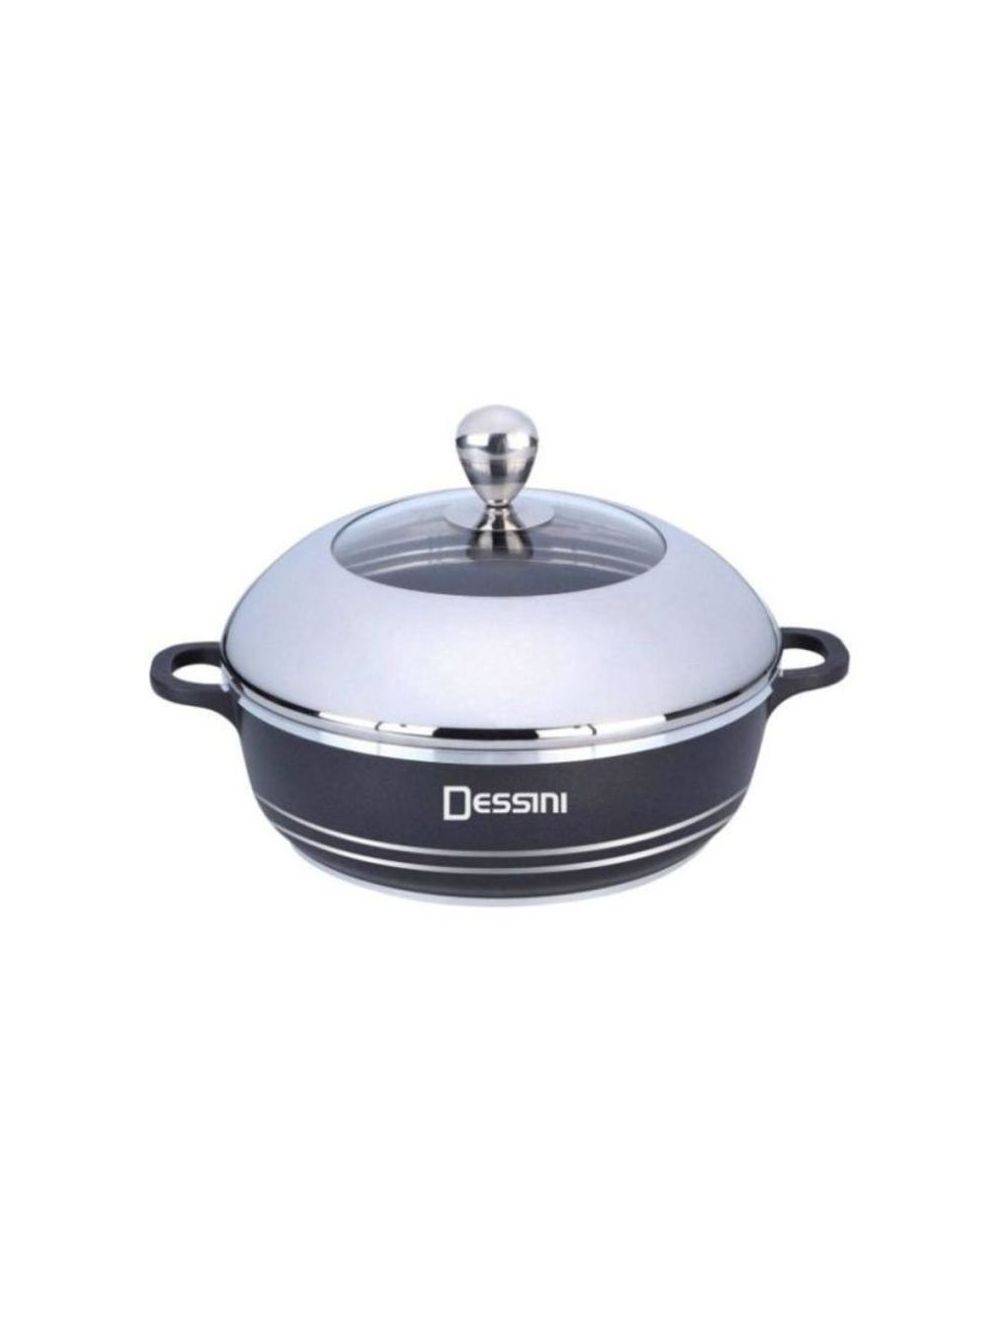 Dessini Shallow Non Stick Casserole Cooking Pot 36 Cm-AKAT126